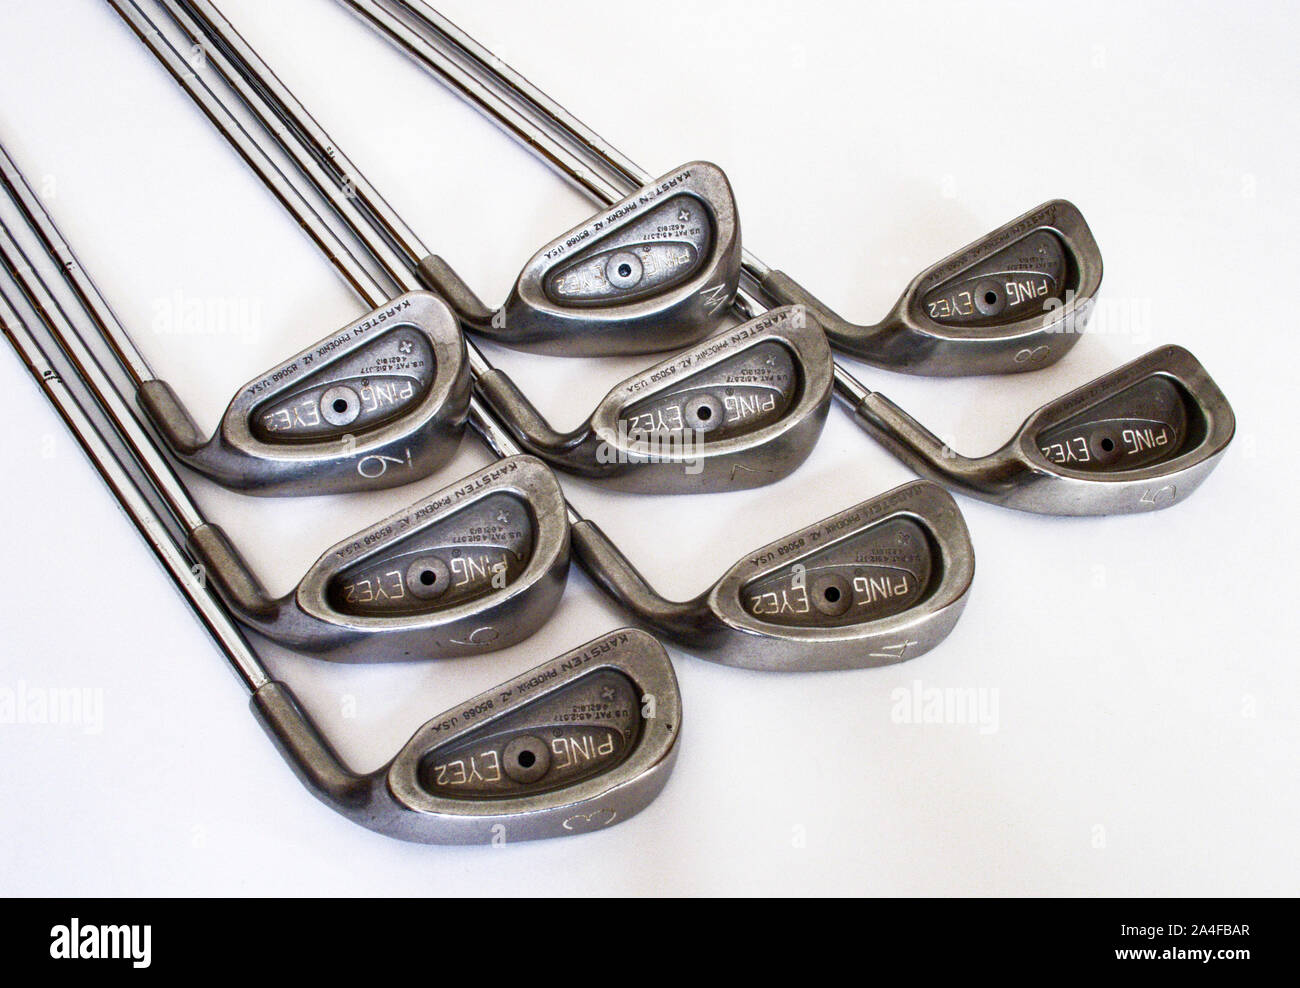 Eine Reihe von Stahl Schaft Ping Augen Golf Irons, 3,4,5,6,7,8,9 und Keil. Alte Golf Clubs. Stockfoto